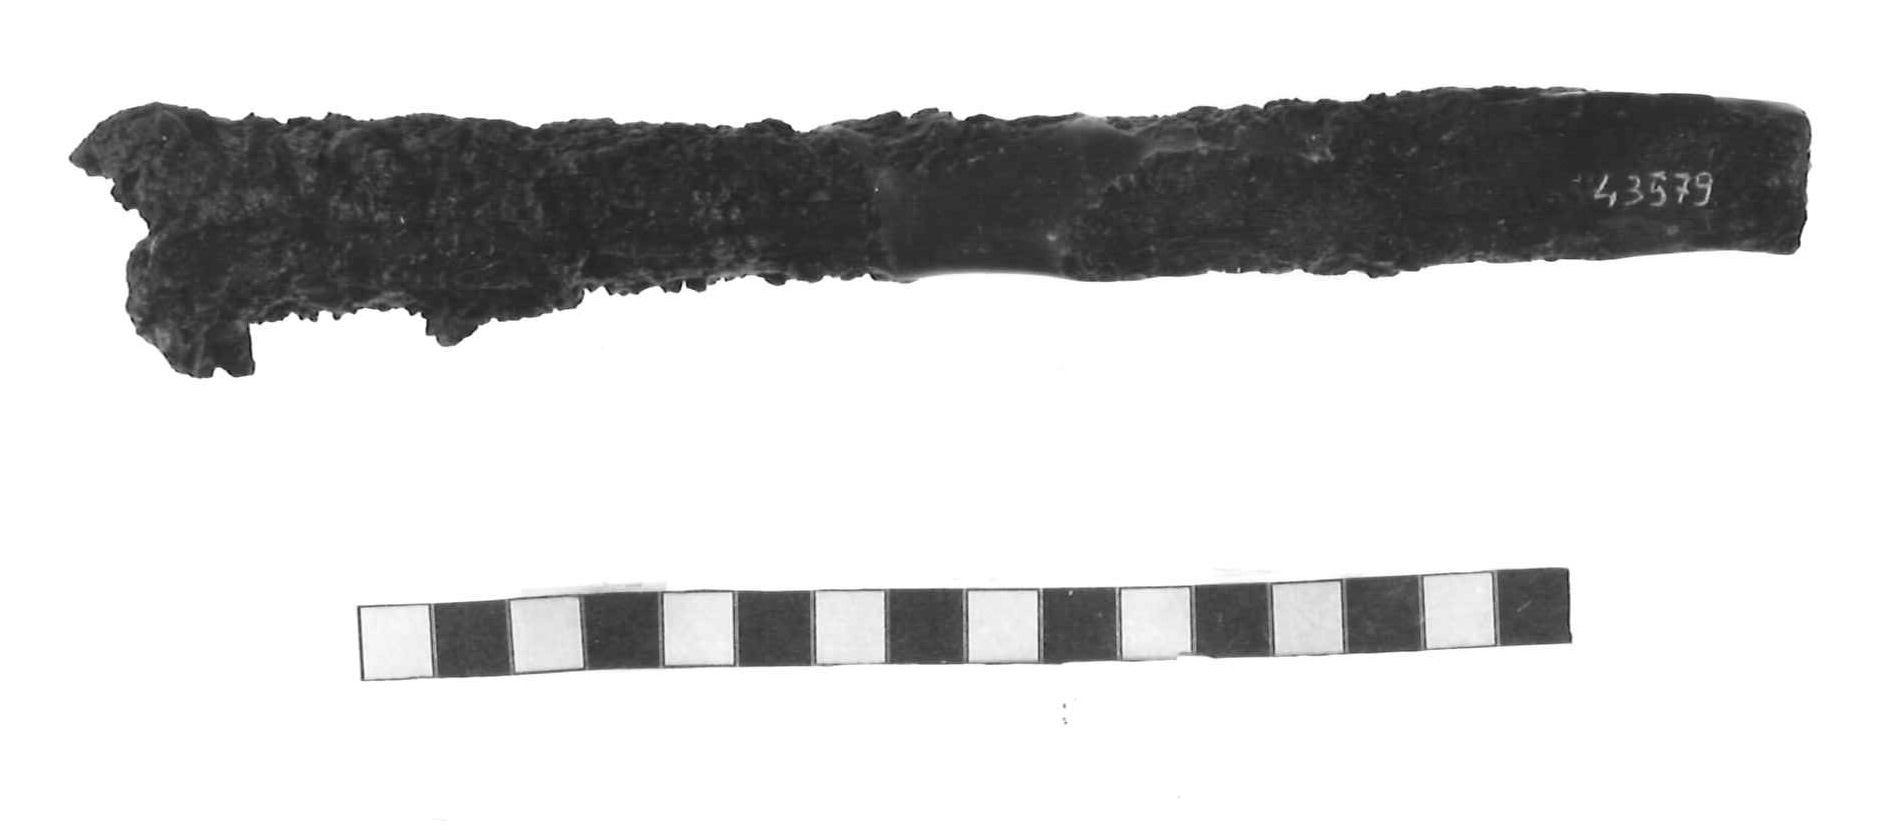 puntale - Piceno III (secc. VII-VI a.C)